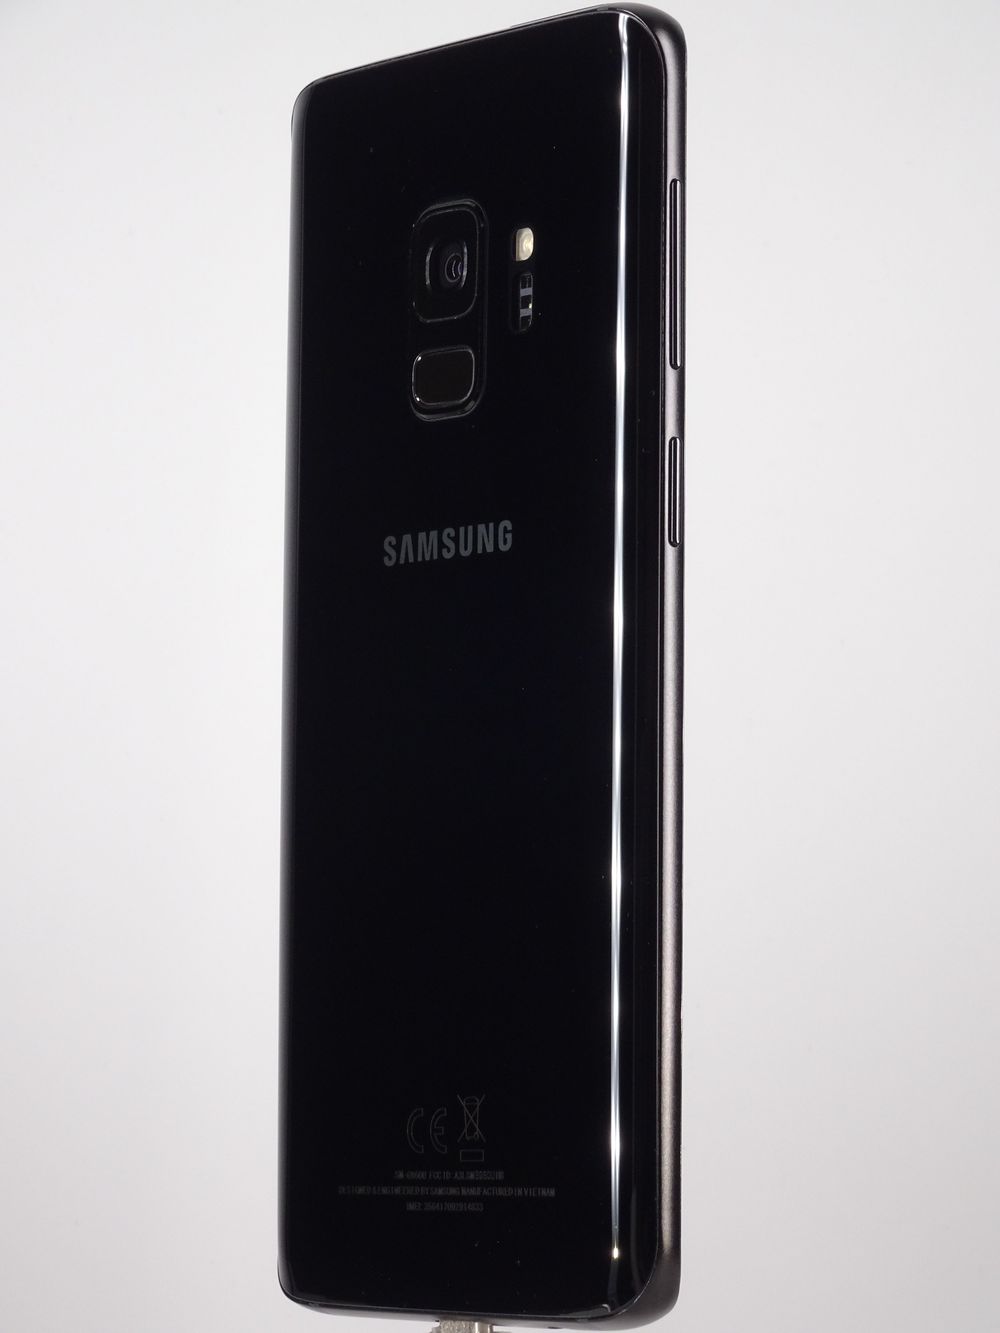 Мобилен телефон Samsung, Galaxy S9, 64 GB, Black,  Като нов